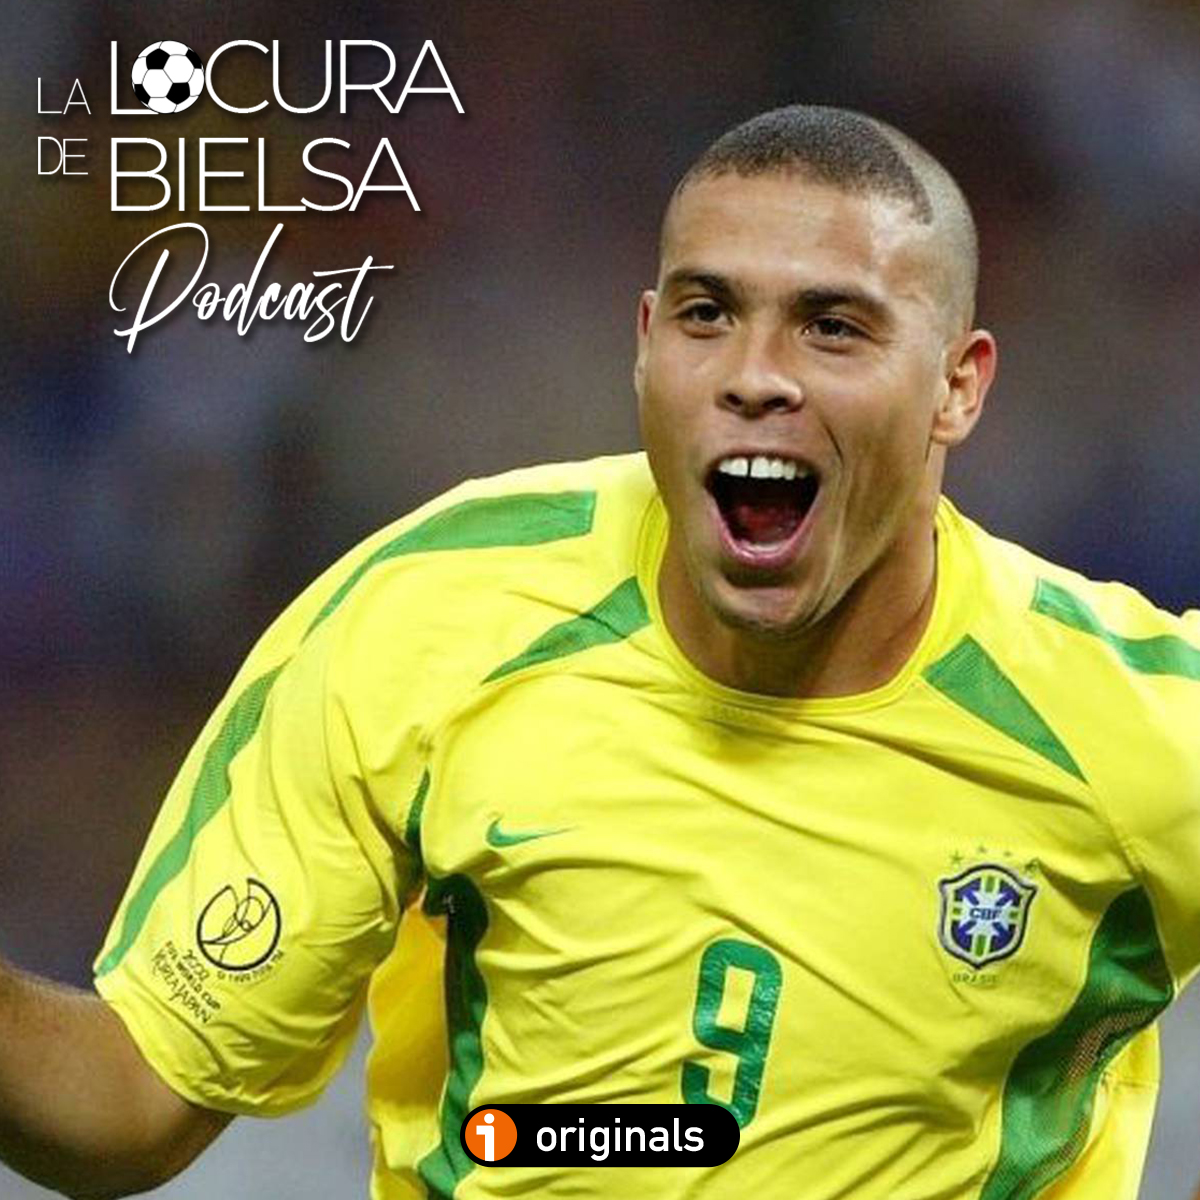 Portada Ronaldo Mundial 2002 Locura de Bielsa